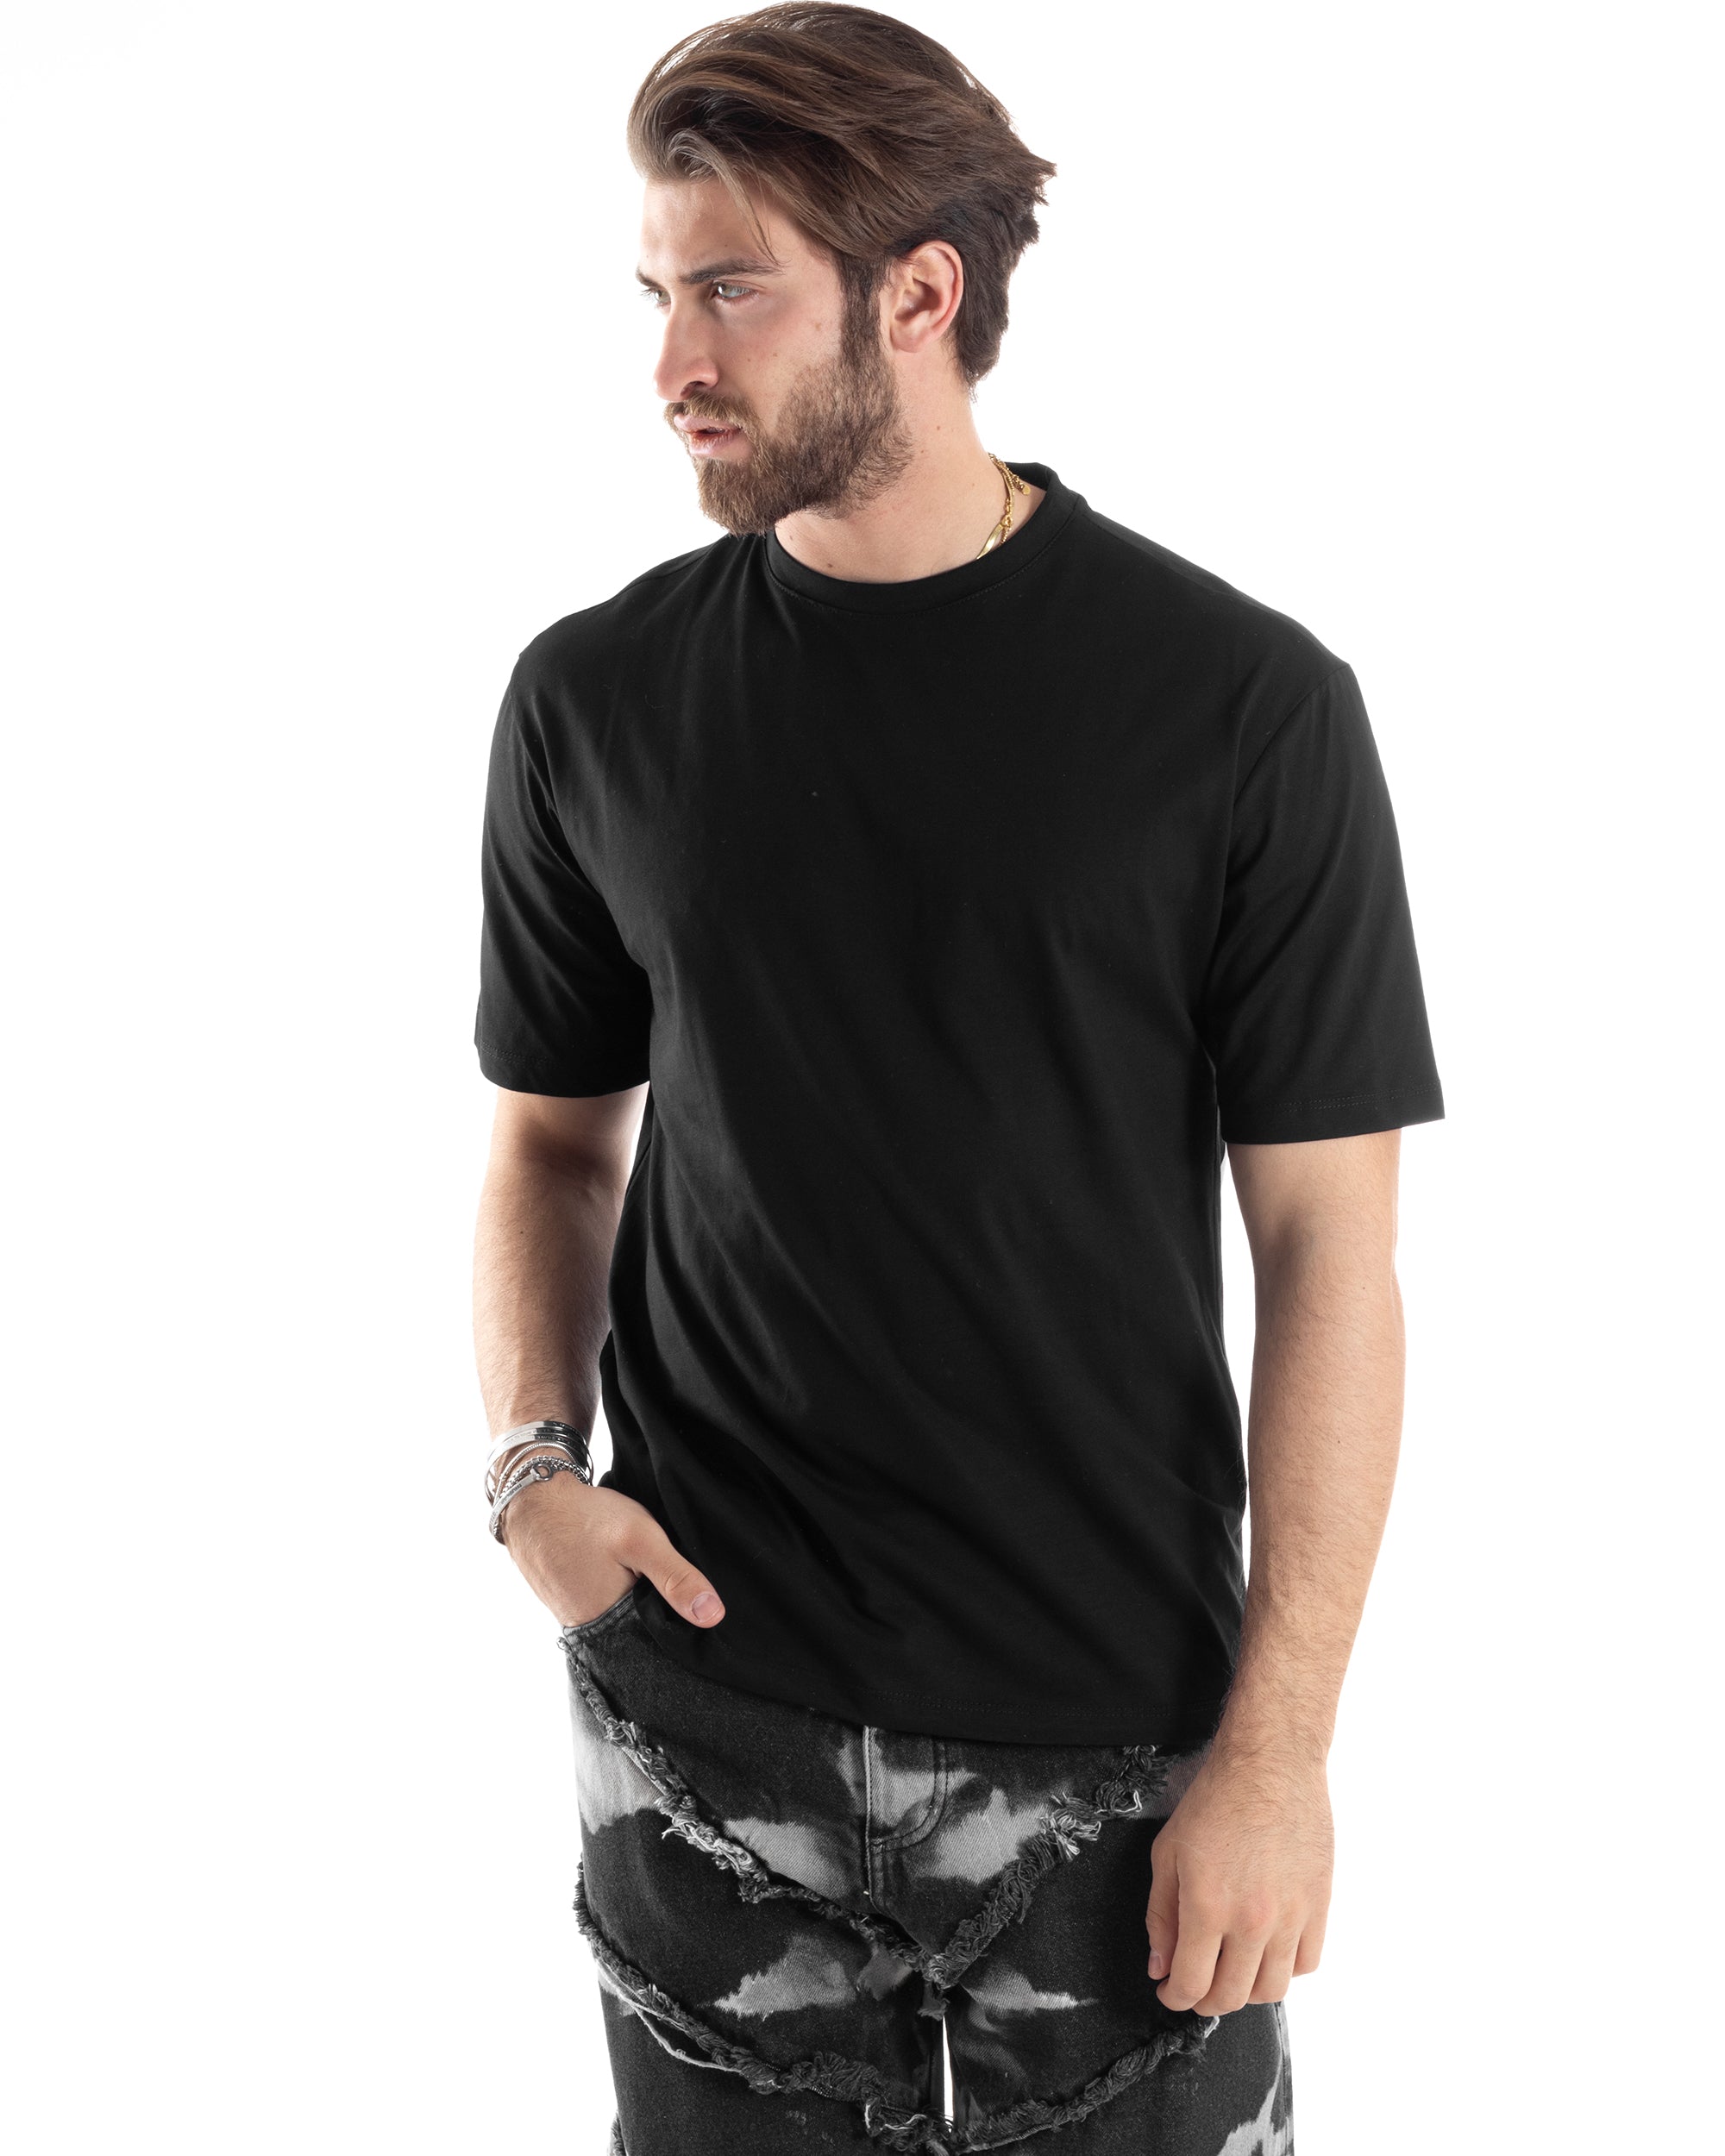 T-Shirt Uomo Con Stampa Maglia Maniche Corte Girocollo Cotone Nero GIOSAL-TS3032A